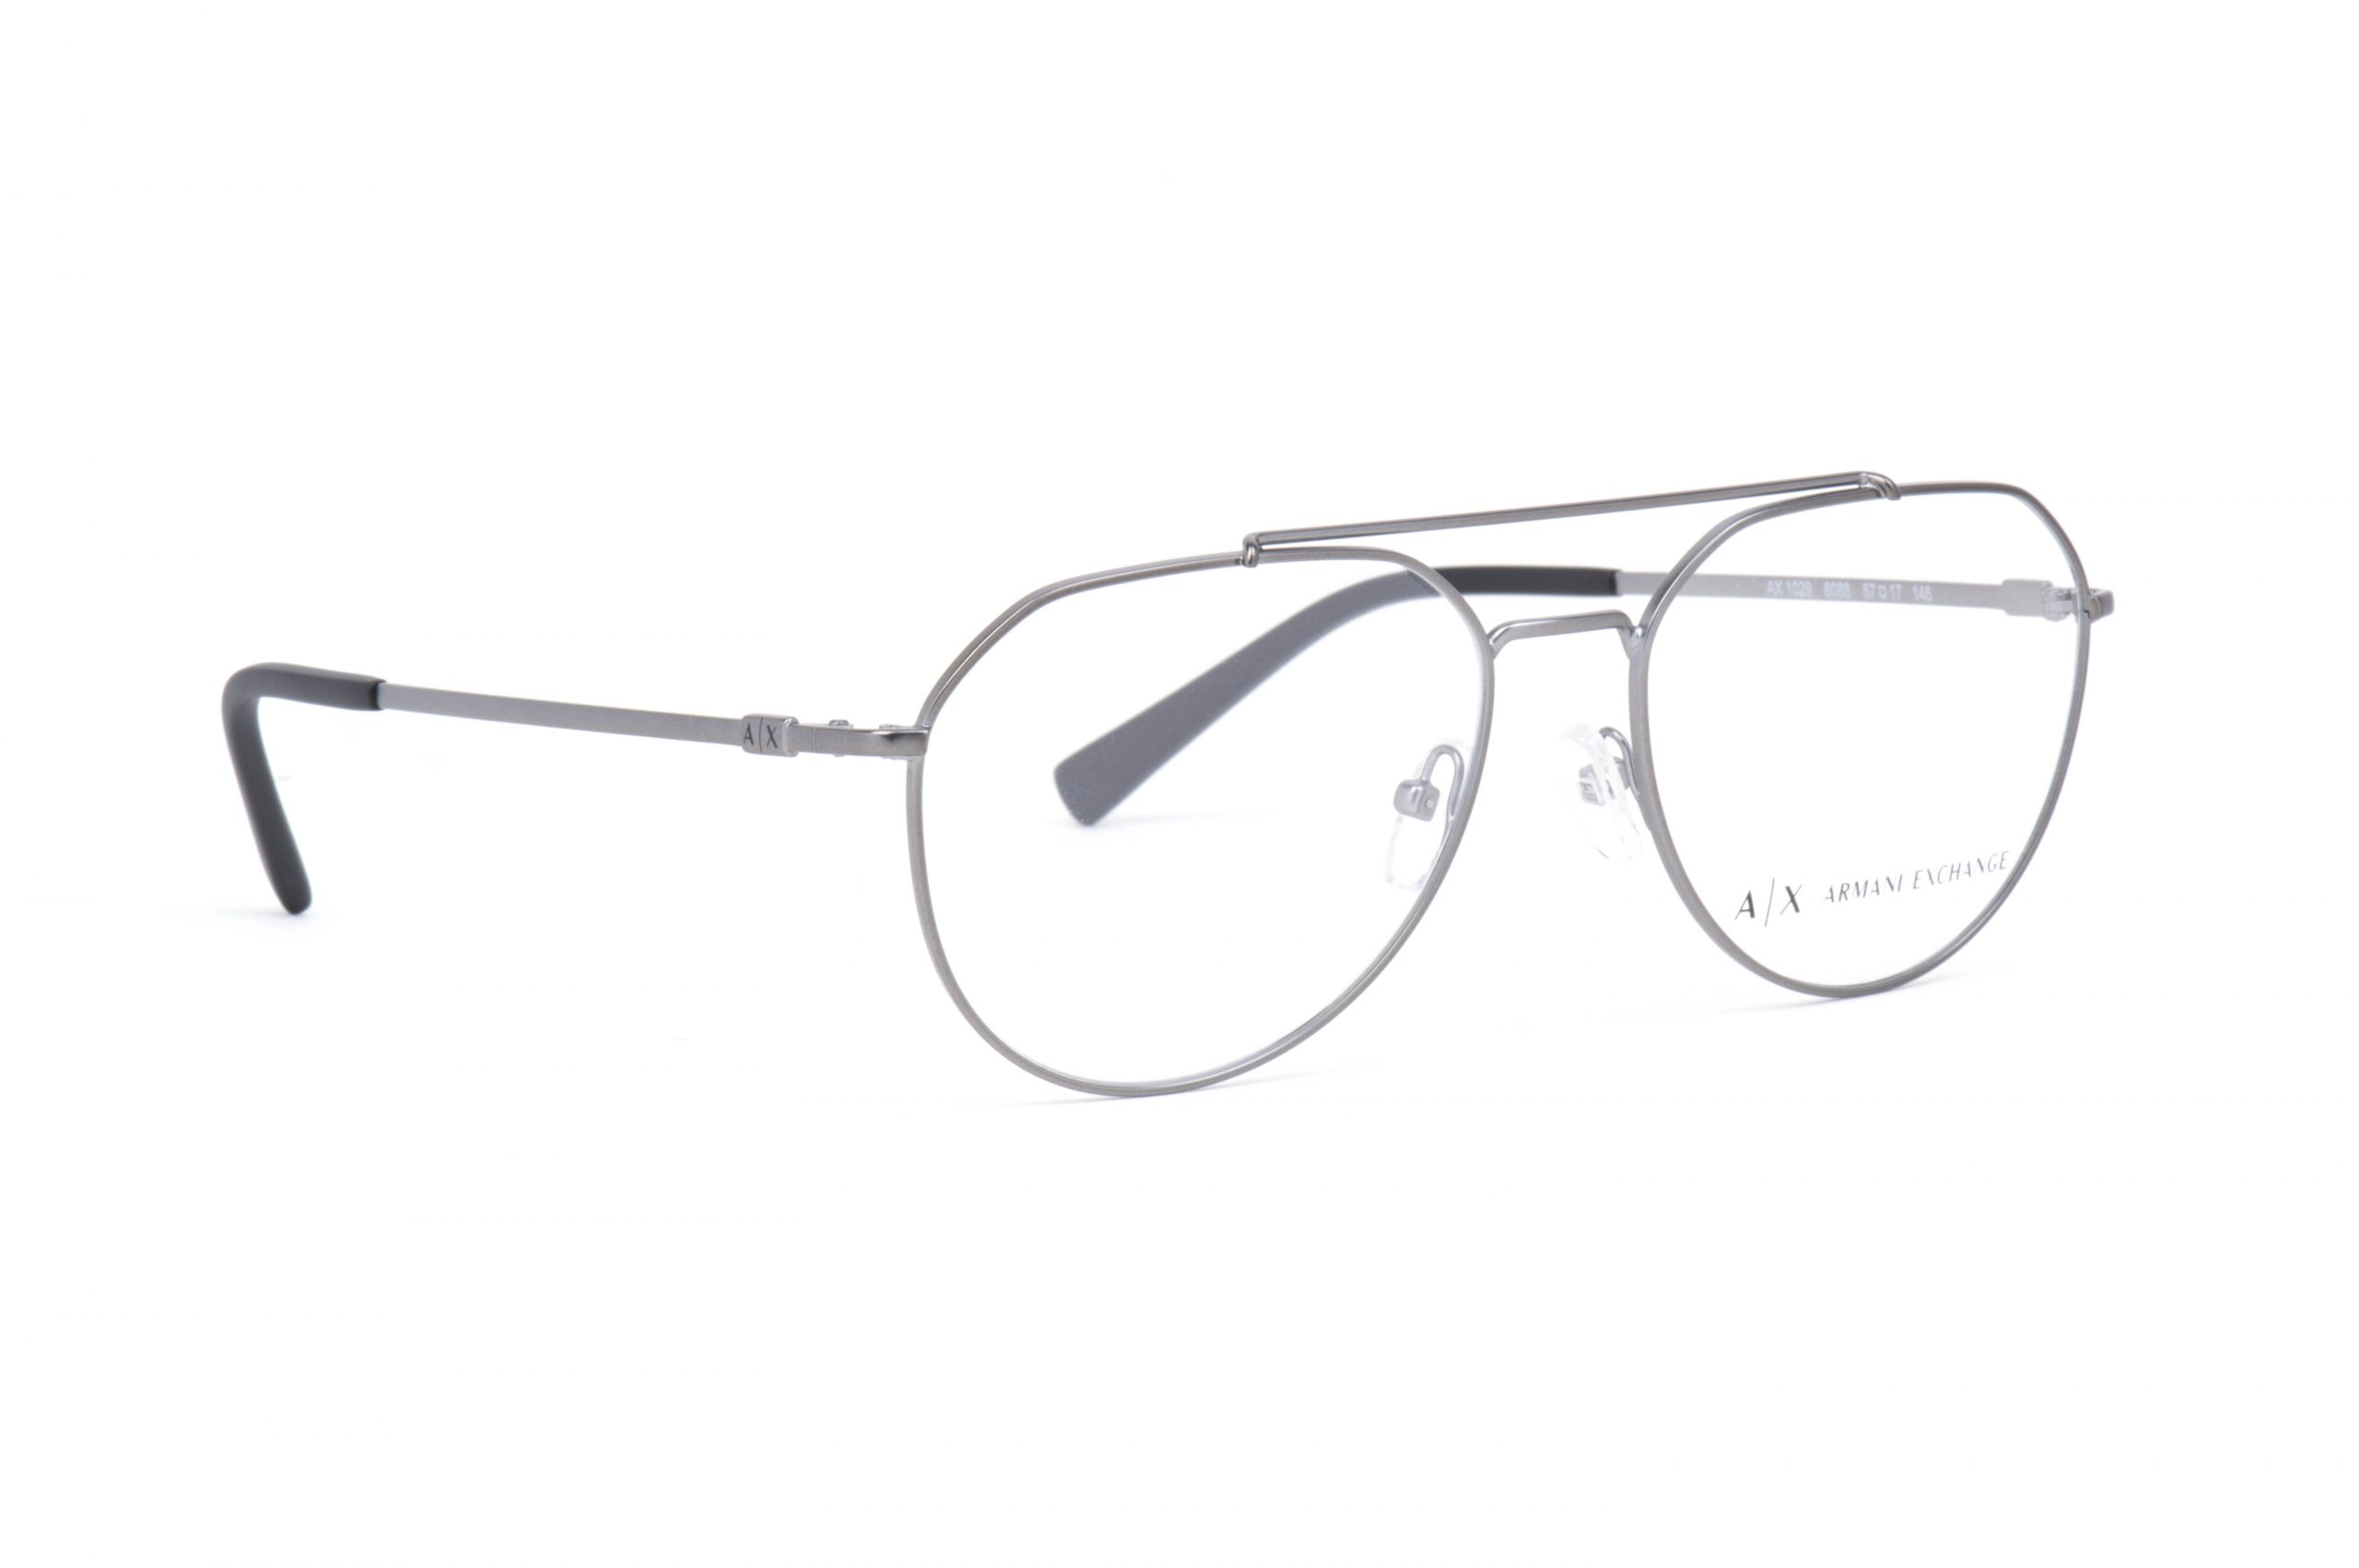 نظارة طبية ارماني اكسشينج AX 1029 مقاس 